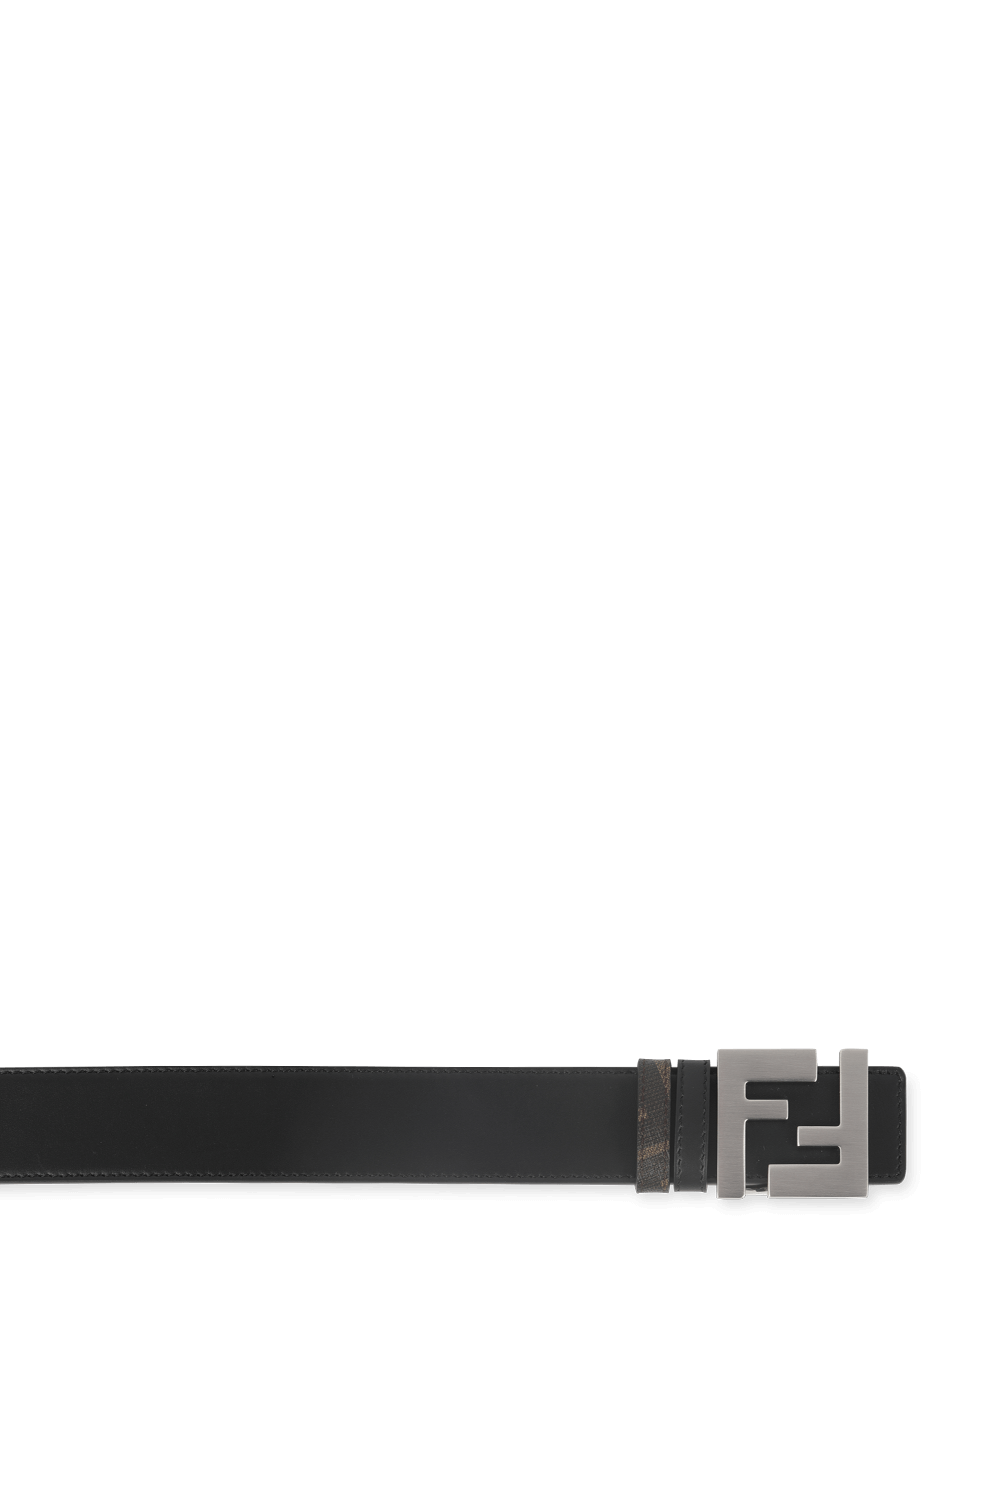 Reverisble Leather Belt in Brown FENDI